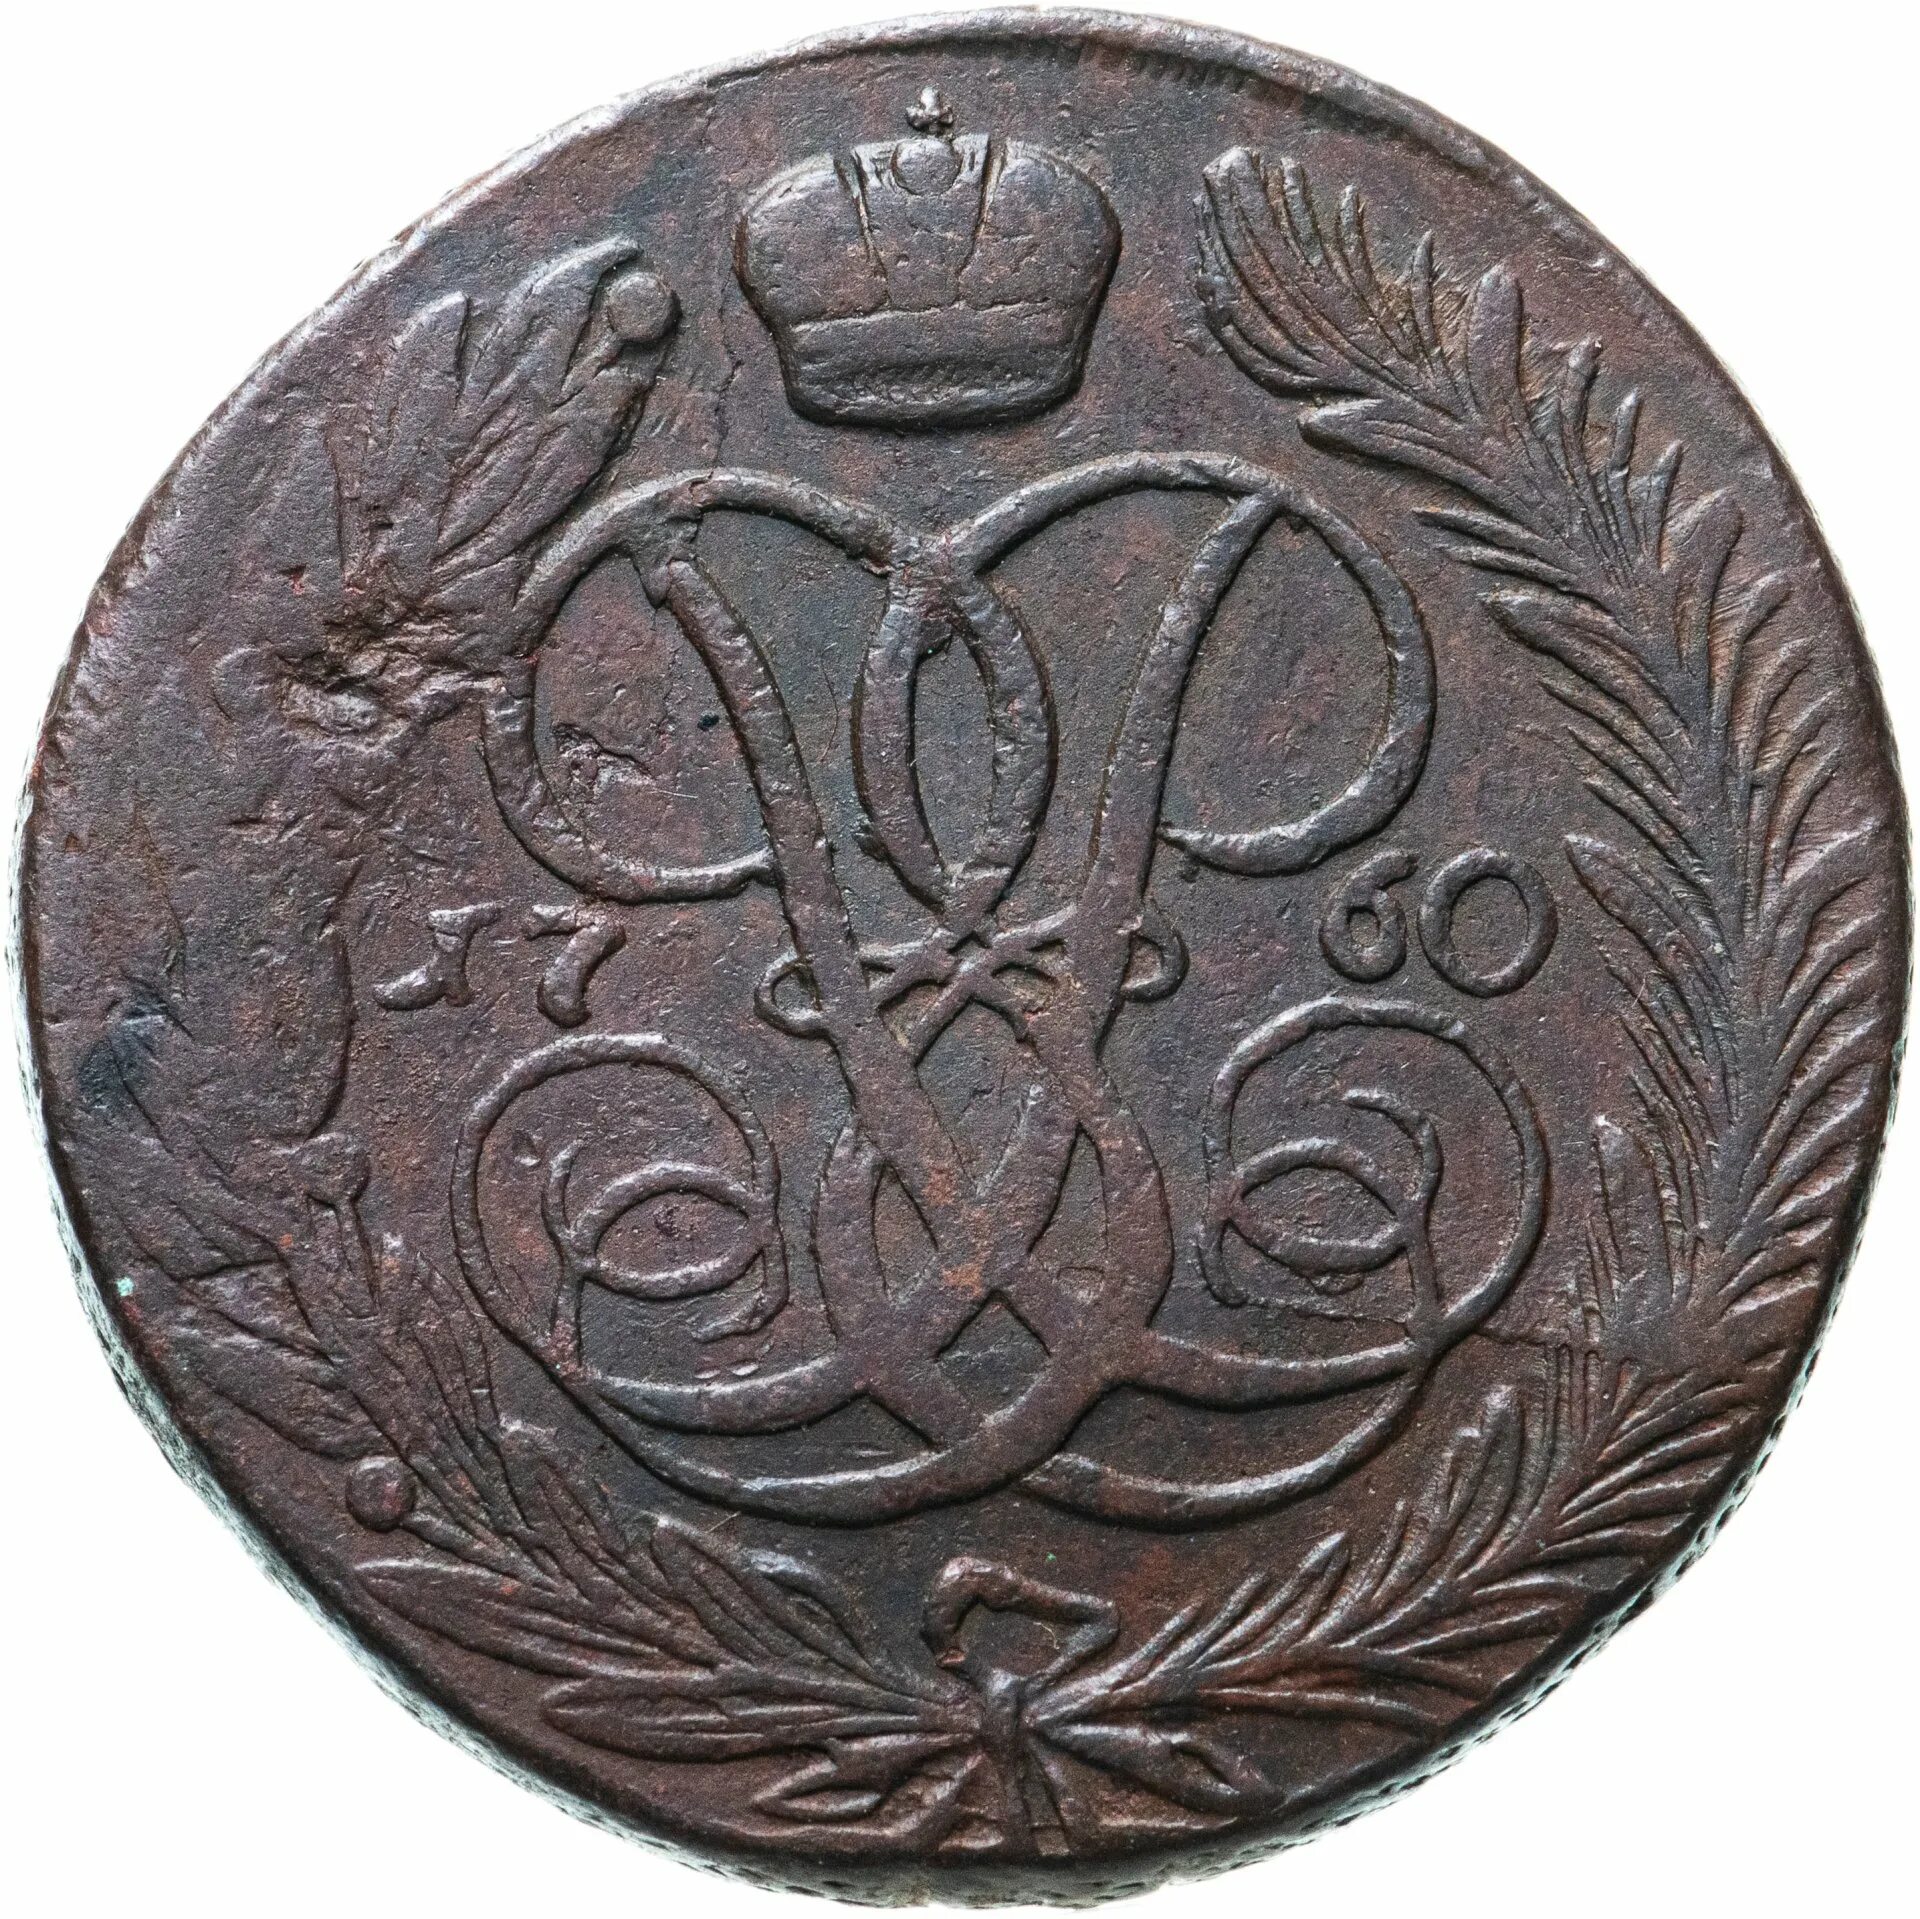 Монеты 1700 цены. 5 Копеек 1759 мм. 5 Копеек 1753. Медные монеты 1700-1800 года. 20 Копеек 1753.